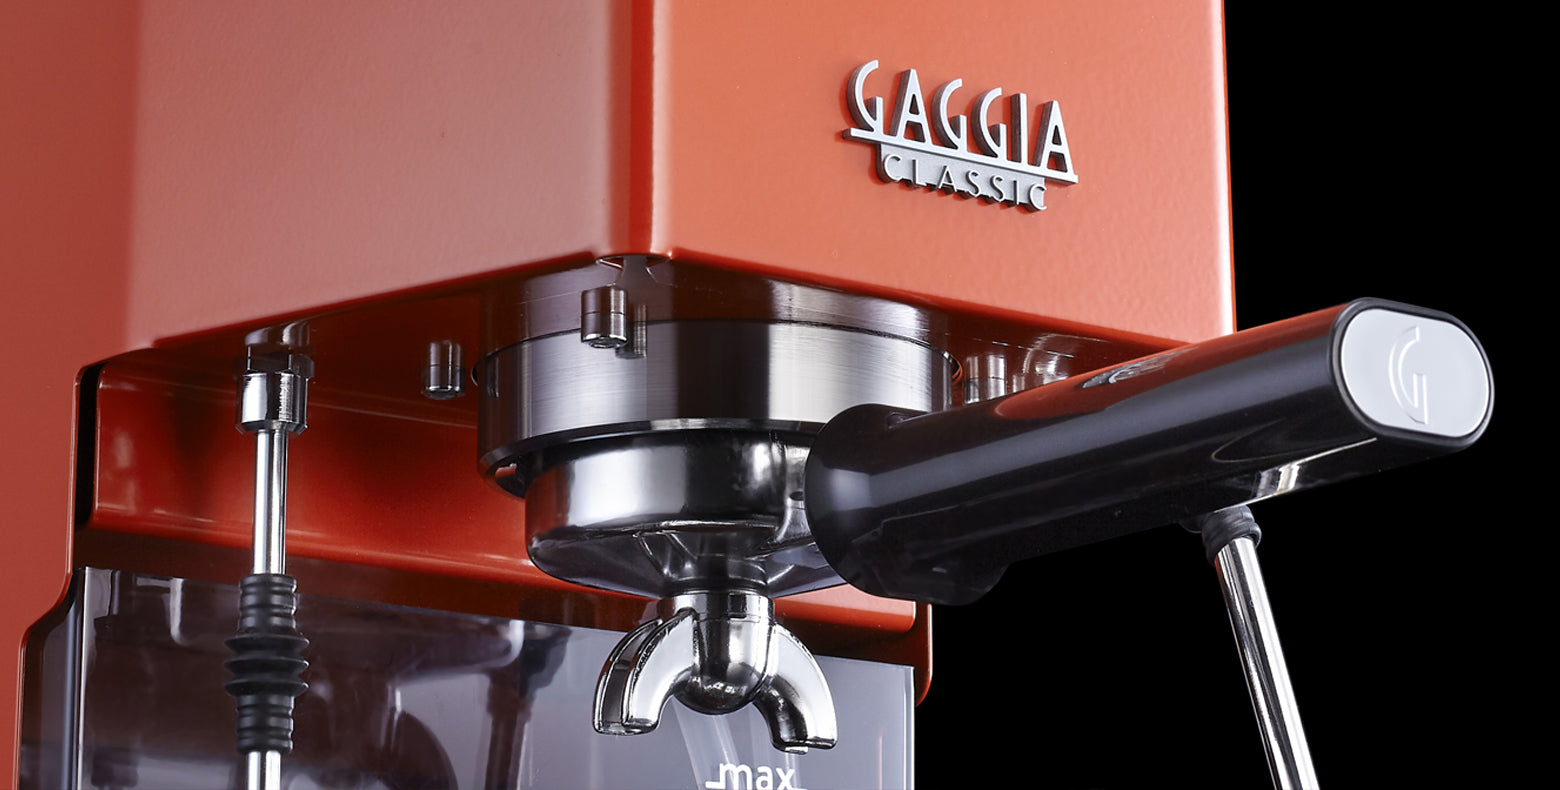 Gaggia Pro Espresso Machine in Lobster Red – Whole Latte Love